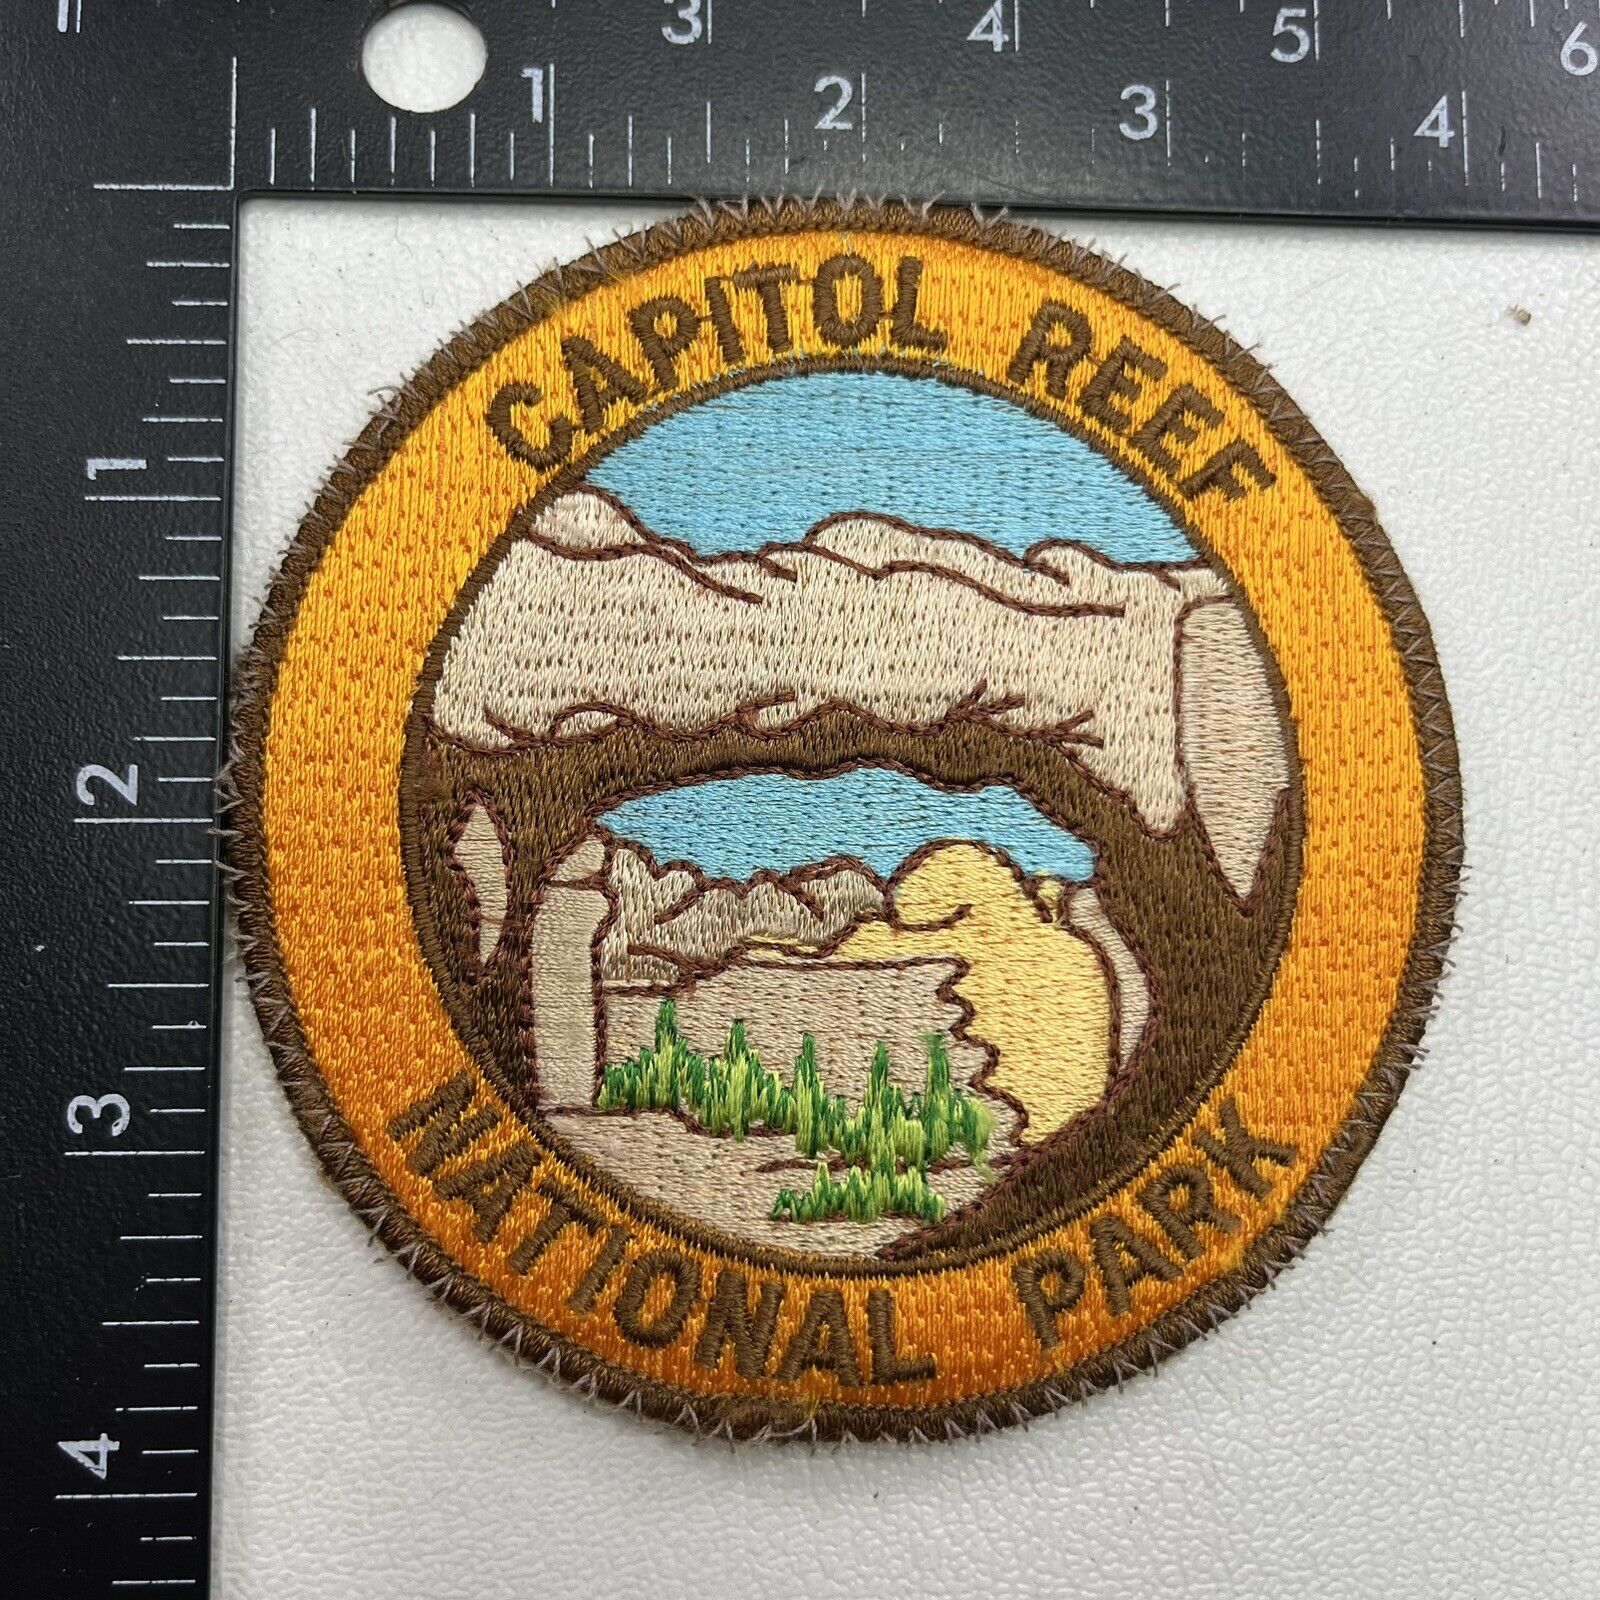 Vtg Utah CAPITOL REEF NATIONAL PARK Patch (Rock Formation)  361J